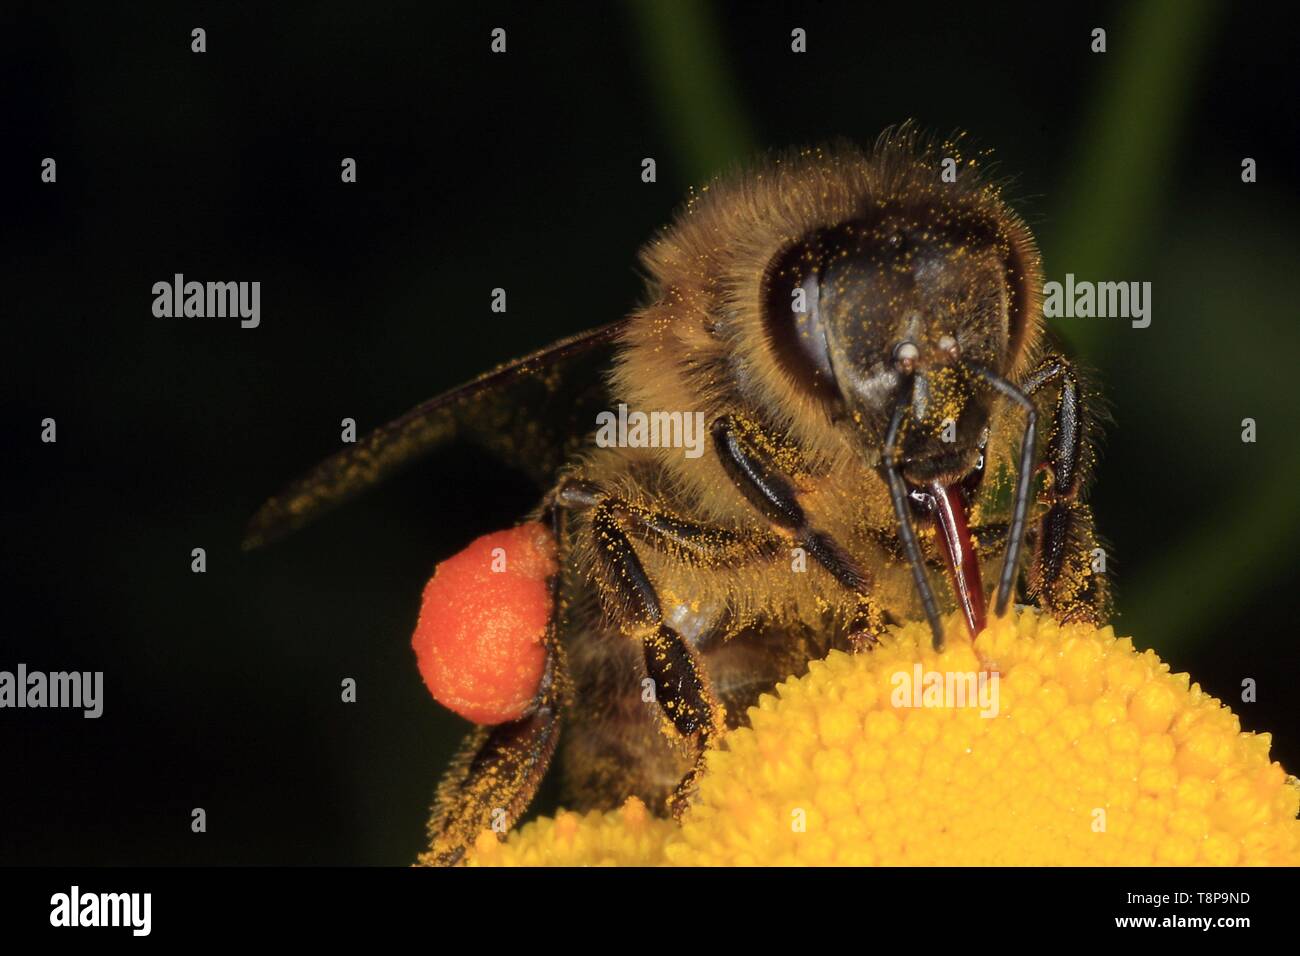 Biene auf Blume der Fox-Ragwort (Dactylorhiza fuchsii), auch Fox-Ragwort. Die Bienen wie die gelben Blüten des foxgrass, wo sie Nektar und Pollen finden zu besuchen. Schmalkalden, Thüringen, Deutschland, Europa Datum: August 18, 2011 | Verwendung weltweit Stockfoto